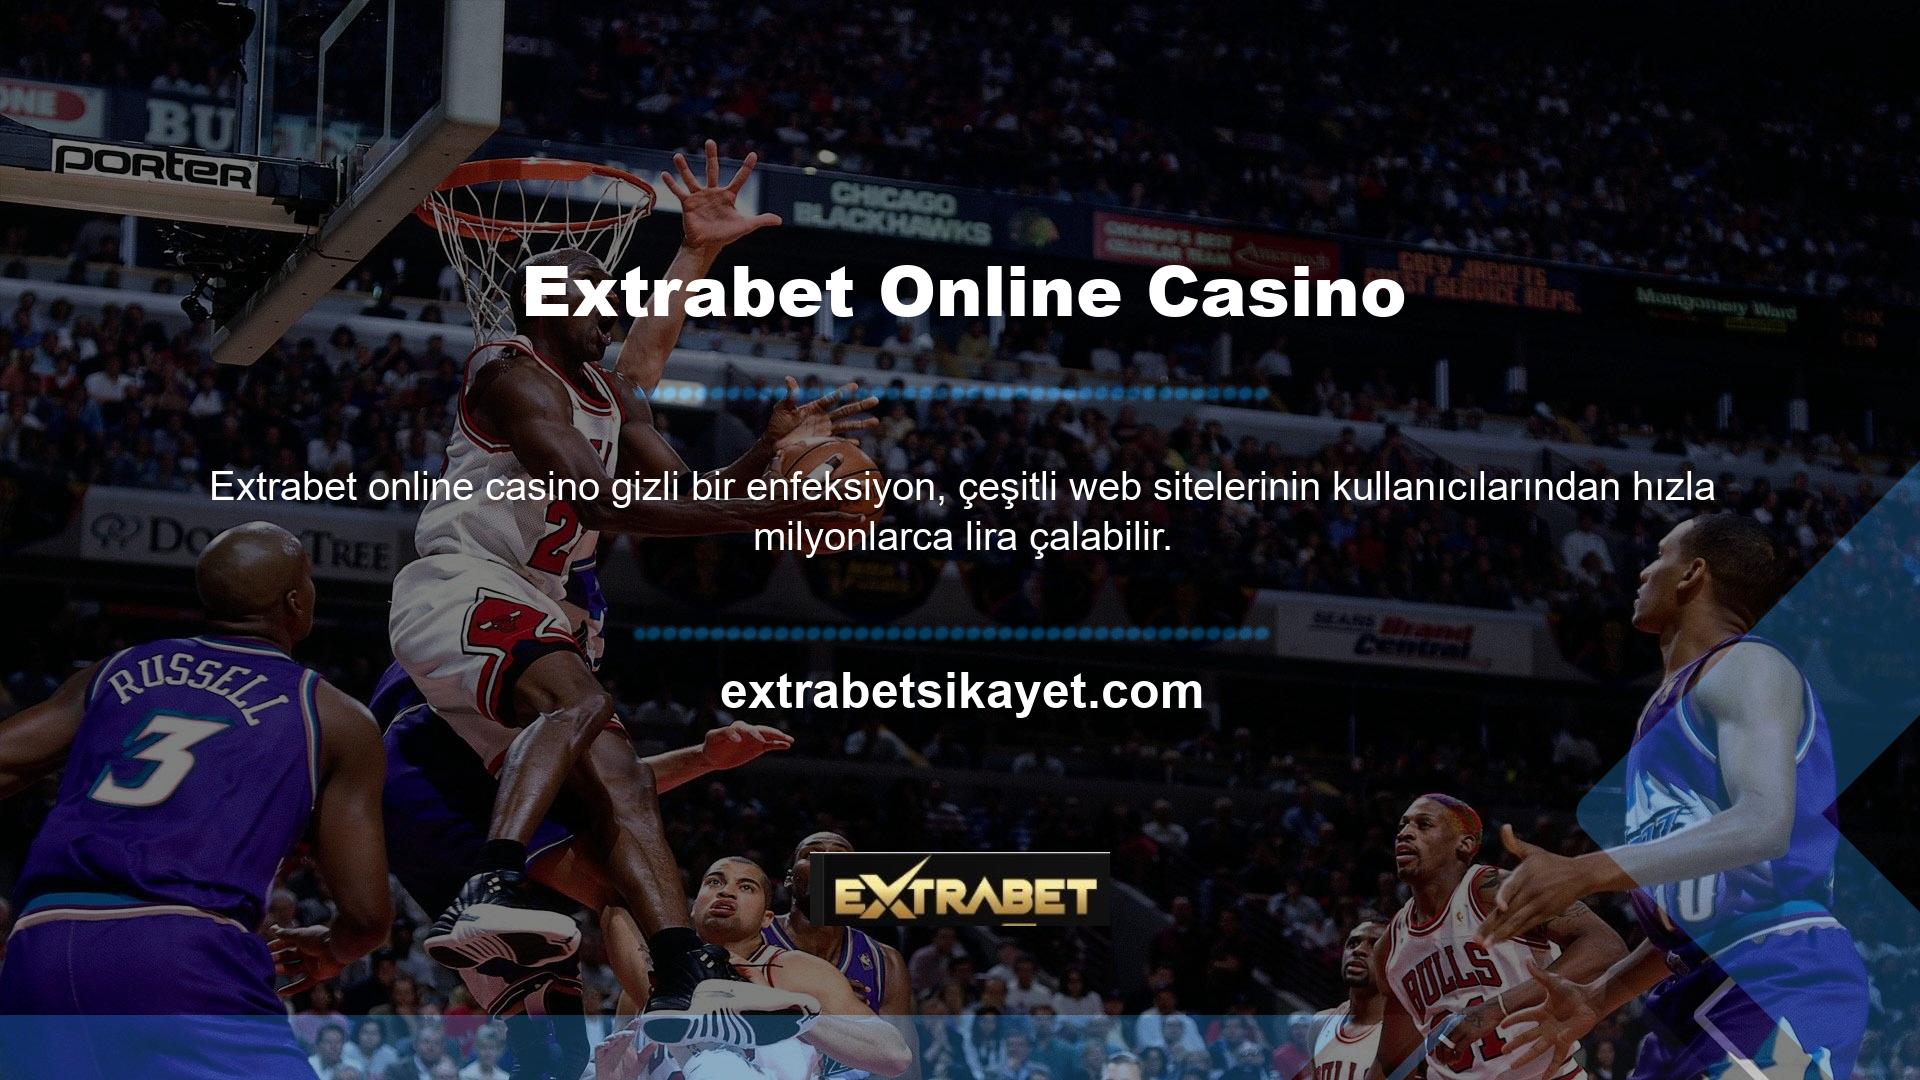 Sorgu şu şekilde tanımlanır: "Extrabet Online Casino’da hile yapmak mümkün mü, ancak izinleri kontrol etmek veya dosyayı istemek için bir bağlantı bulamıyorum?" Rehberlik arayın